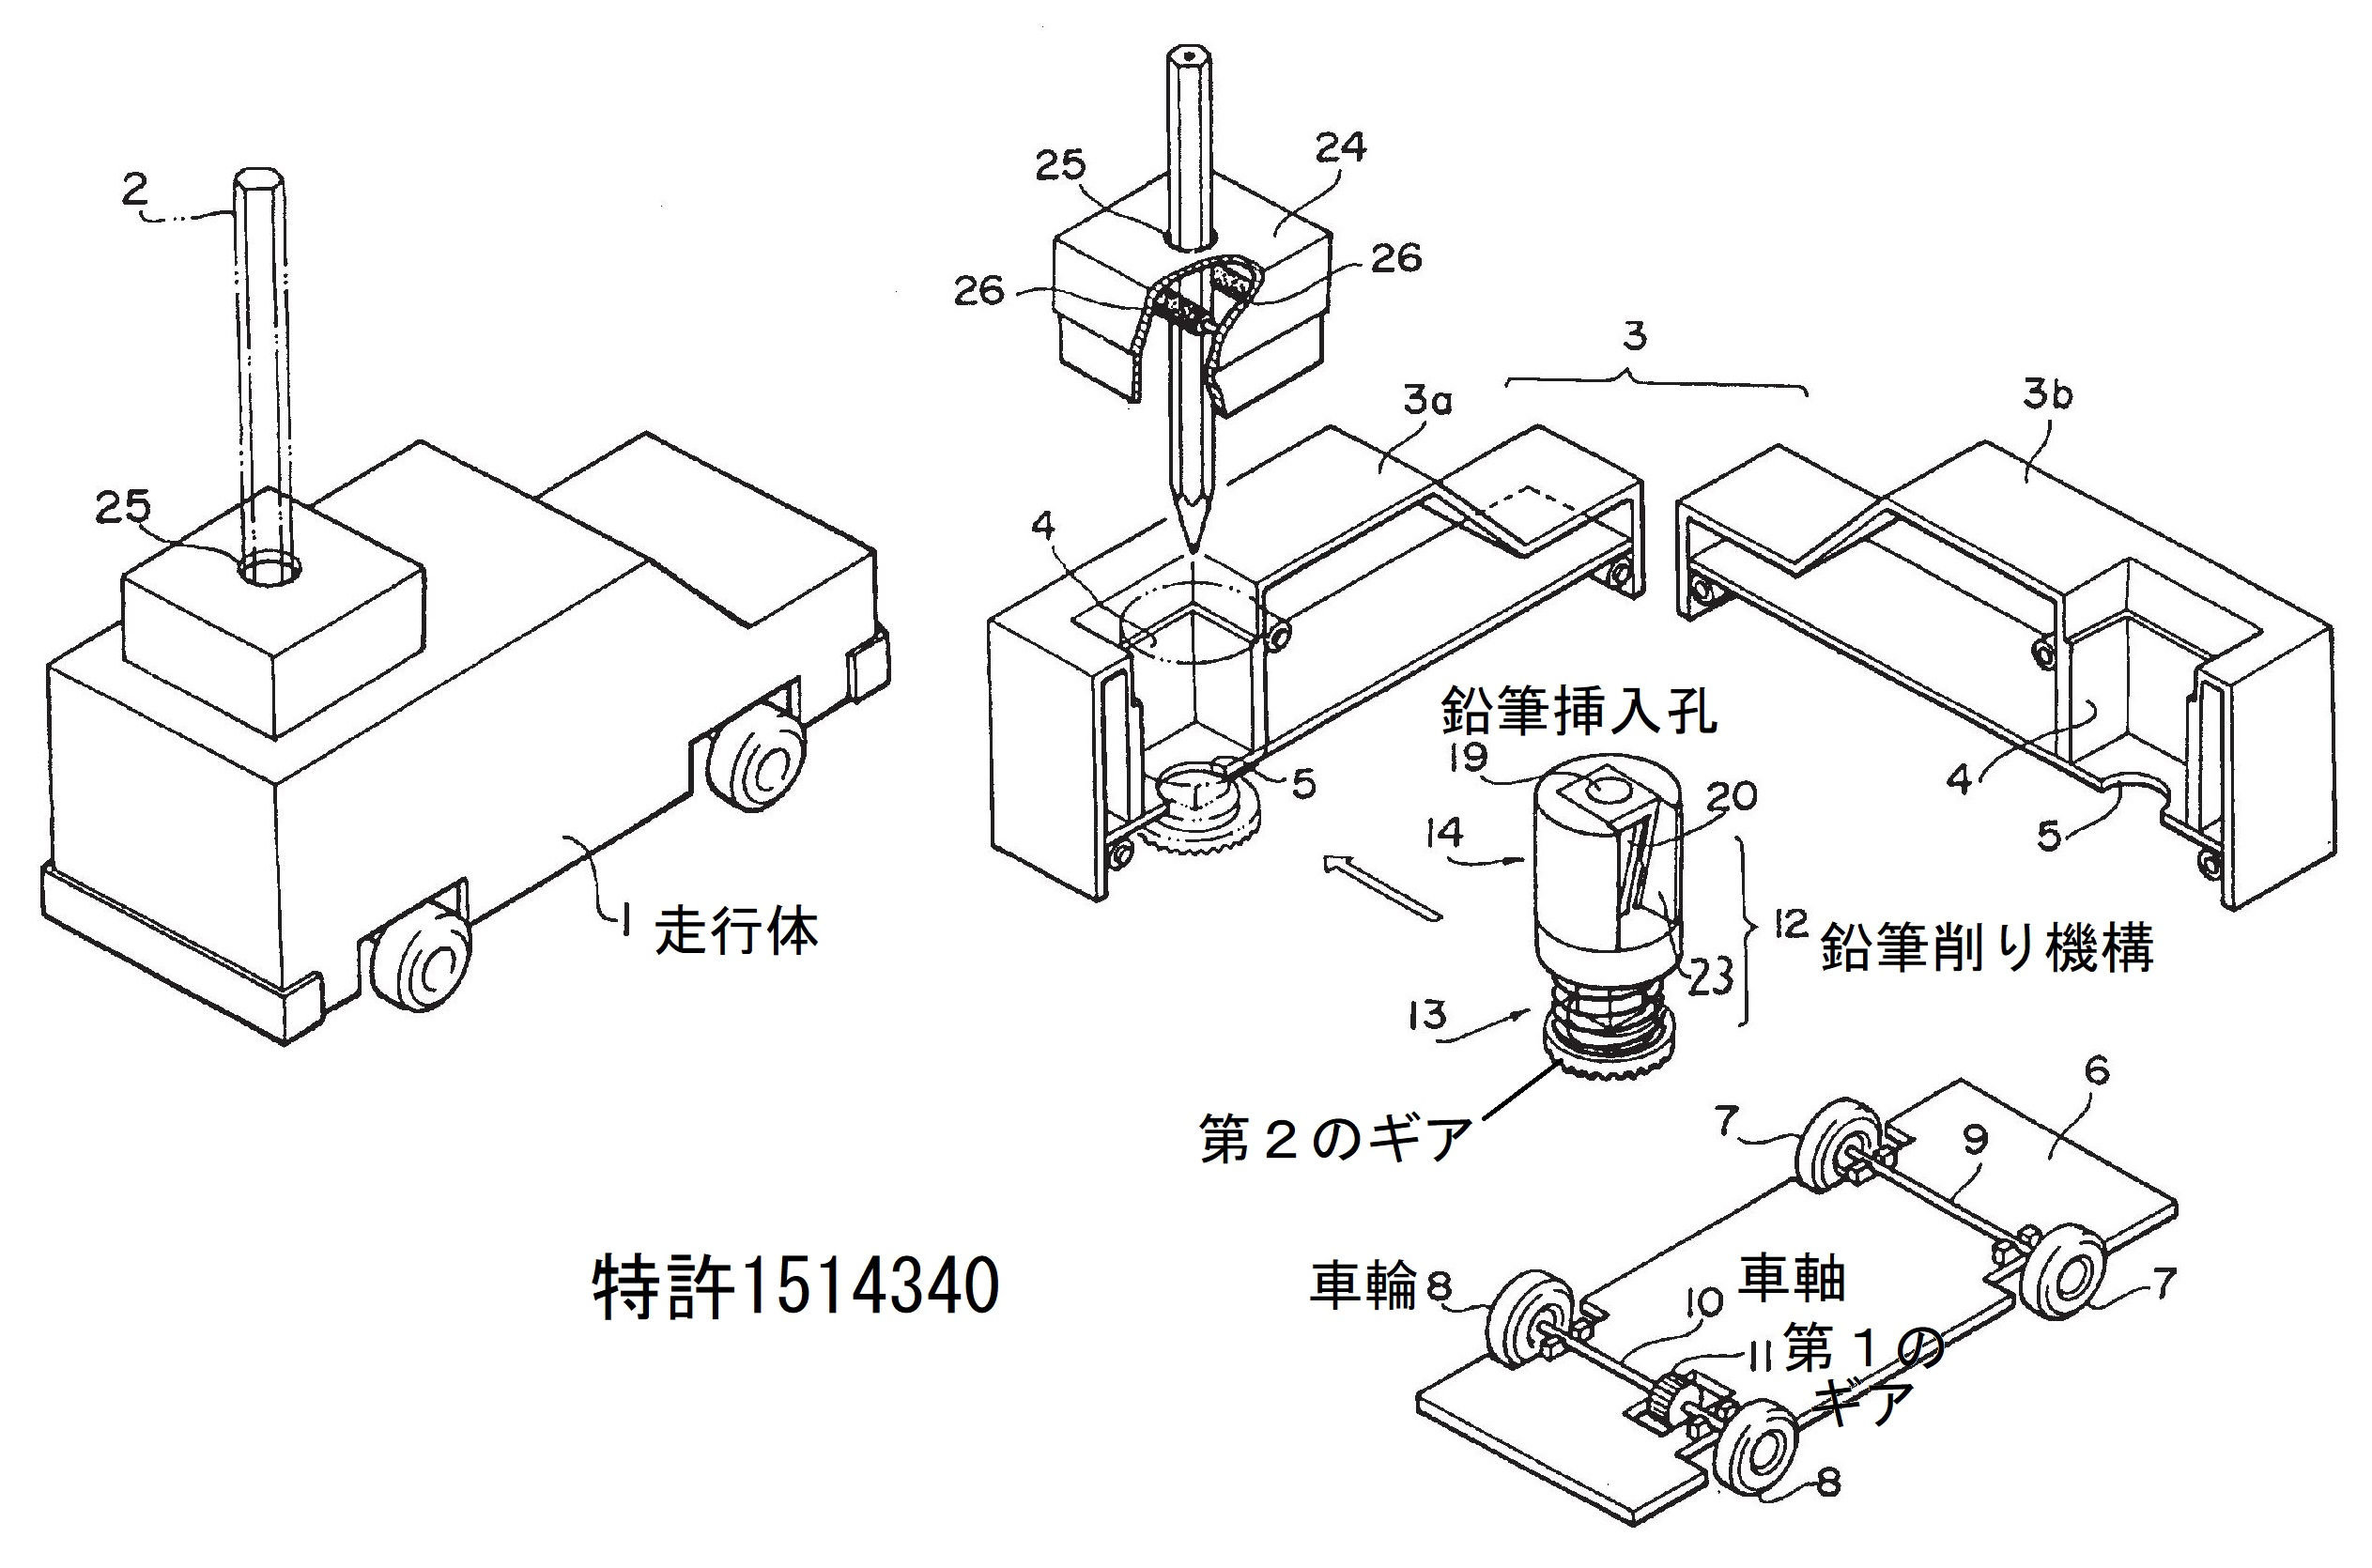 特許・実用新案の実例：鉛筆削り付走行玩具